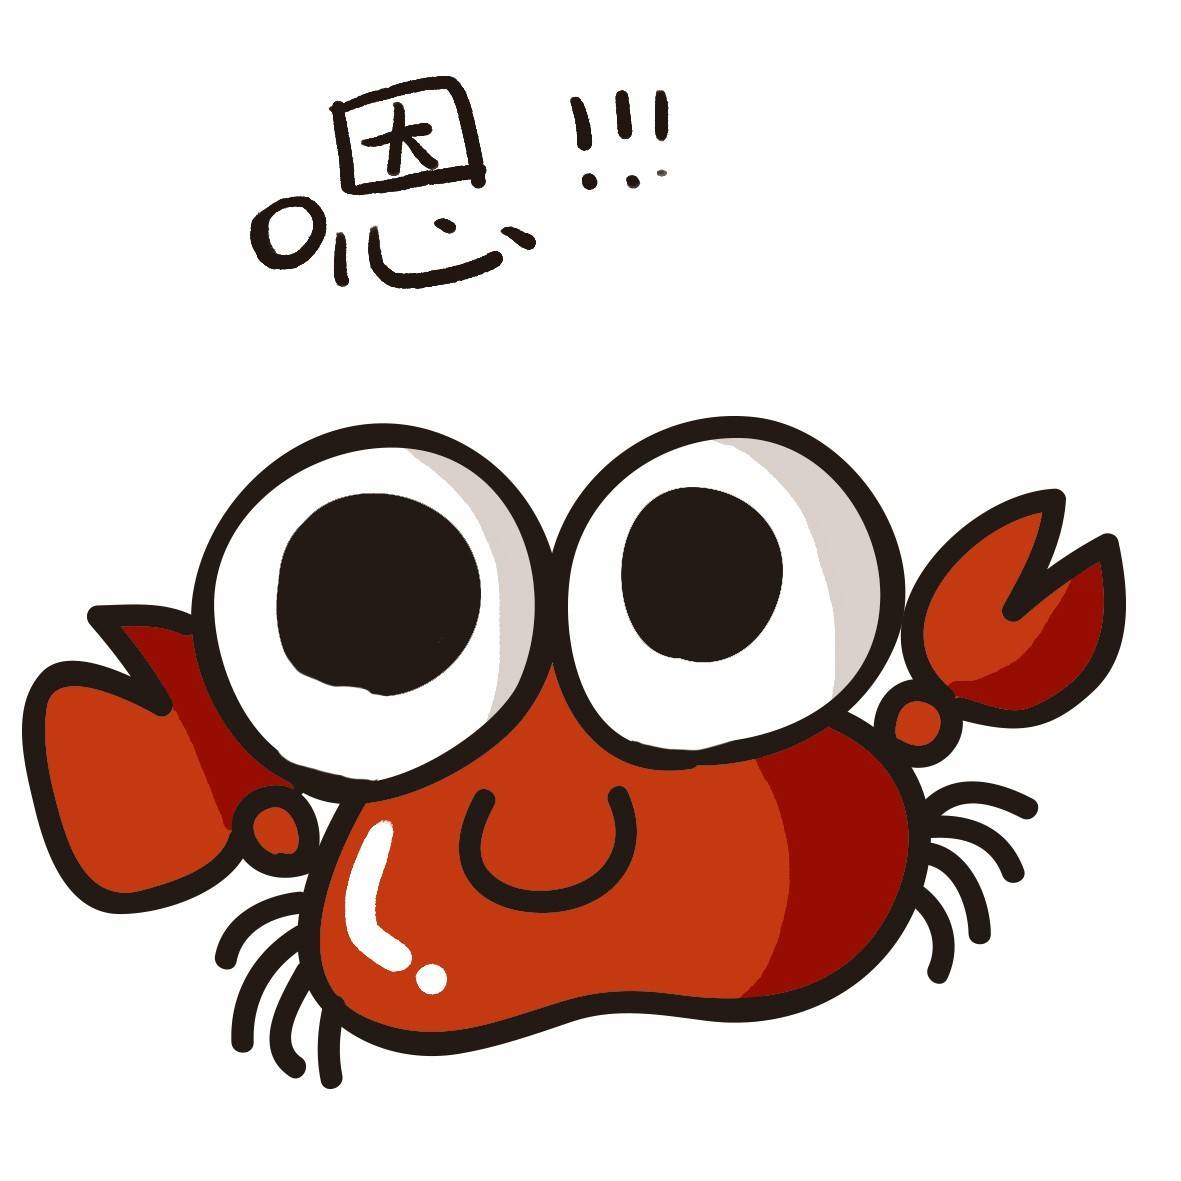 小螃蟹系列表情 萌萌哒 ⊙ω⊙ 嗯!